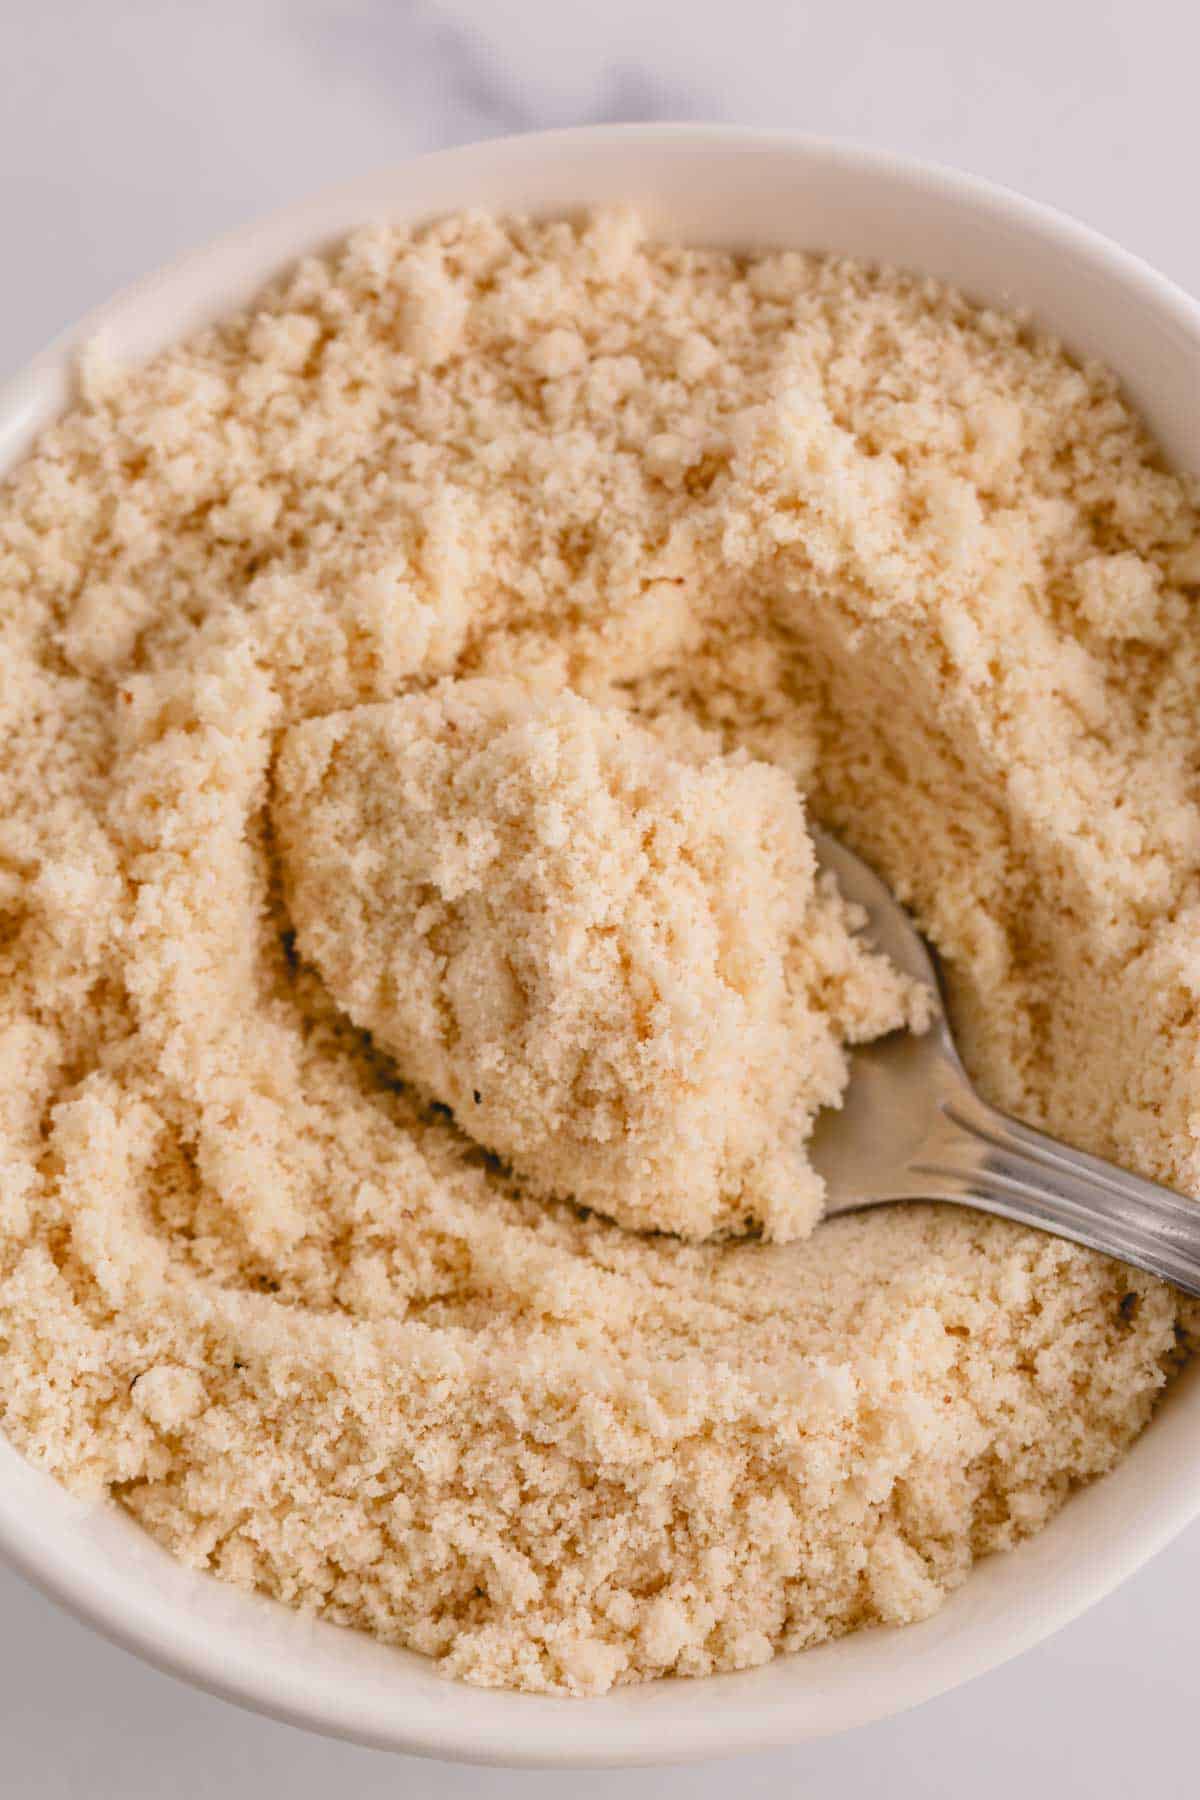 Almond flour in a white bowl.